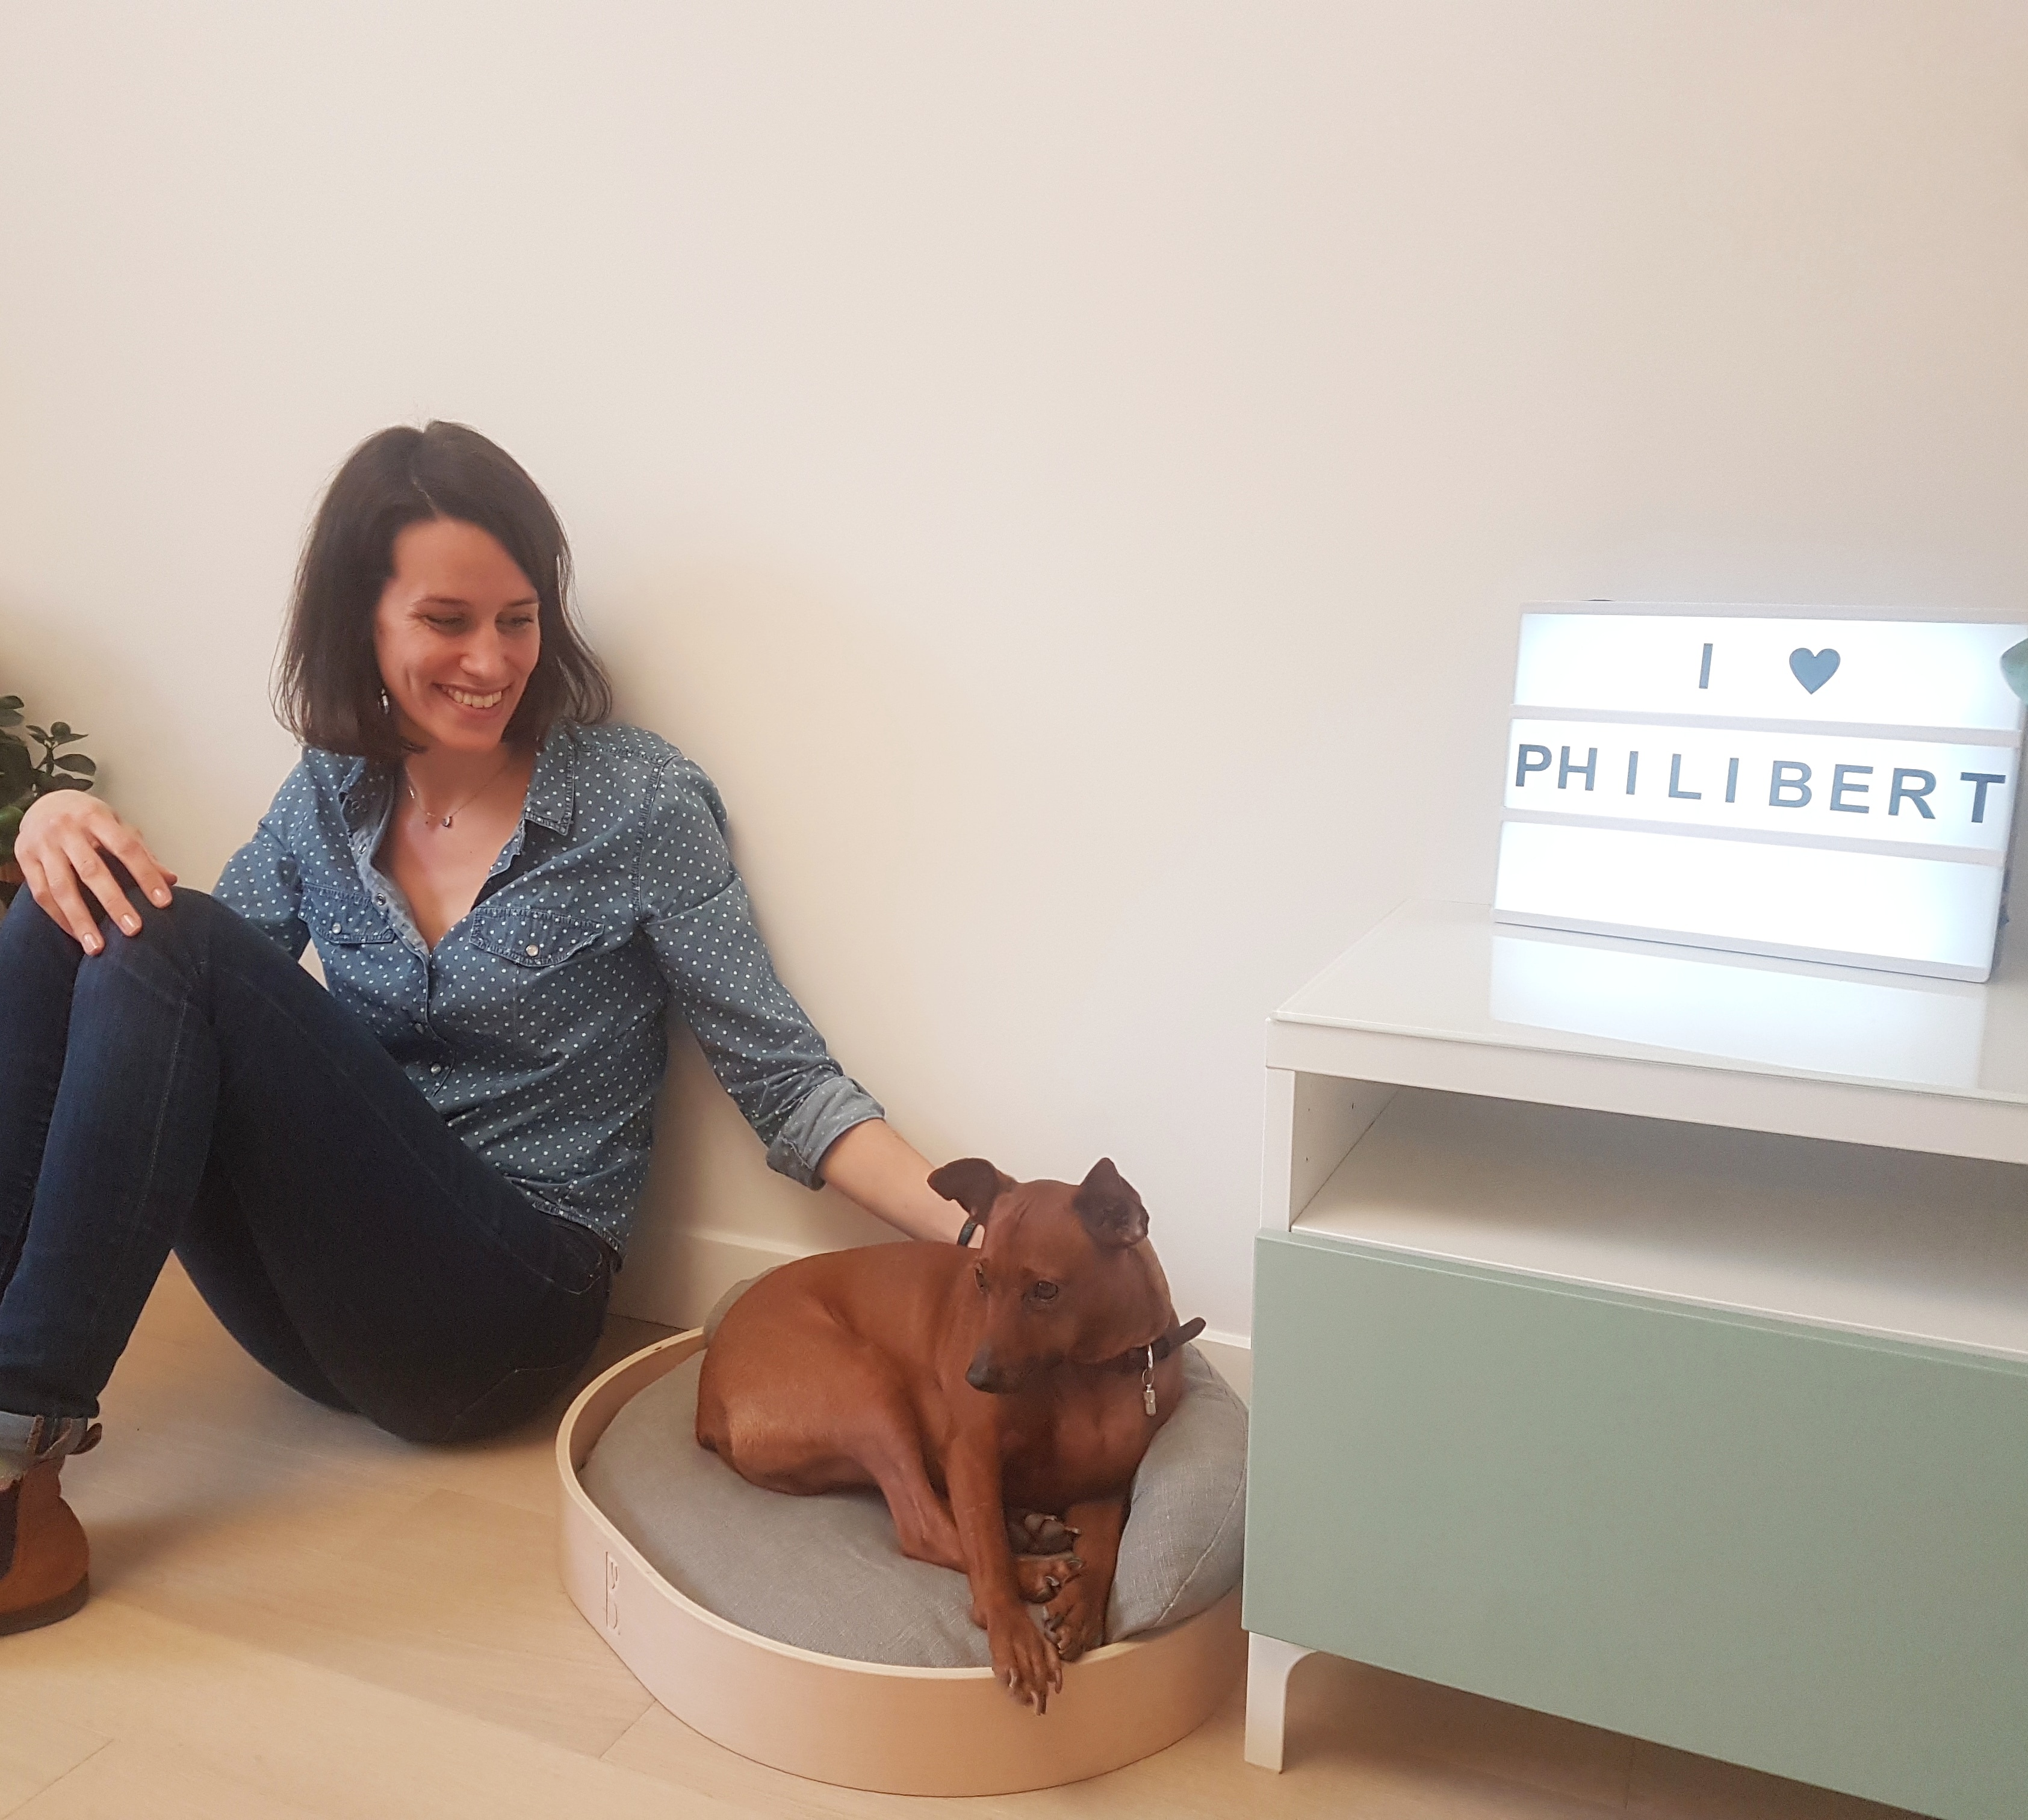 PHILIBERT, mobilier élégant pour chiens exigeants - Ulule